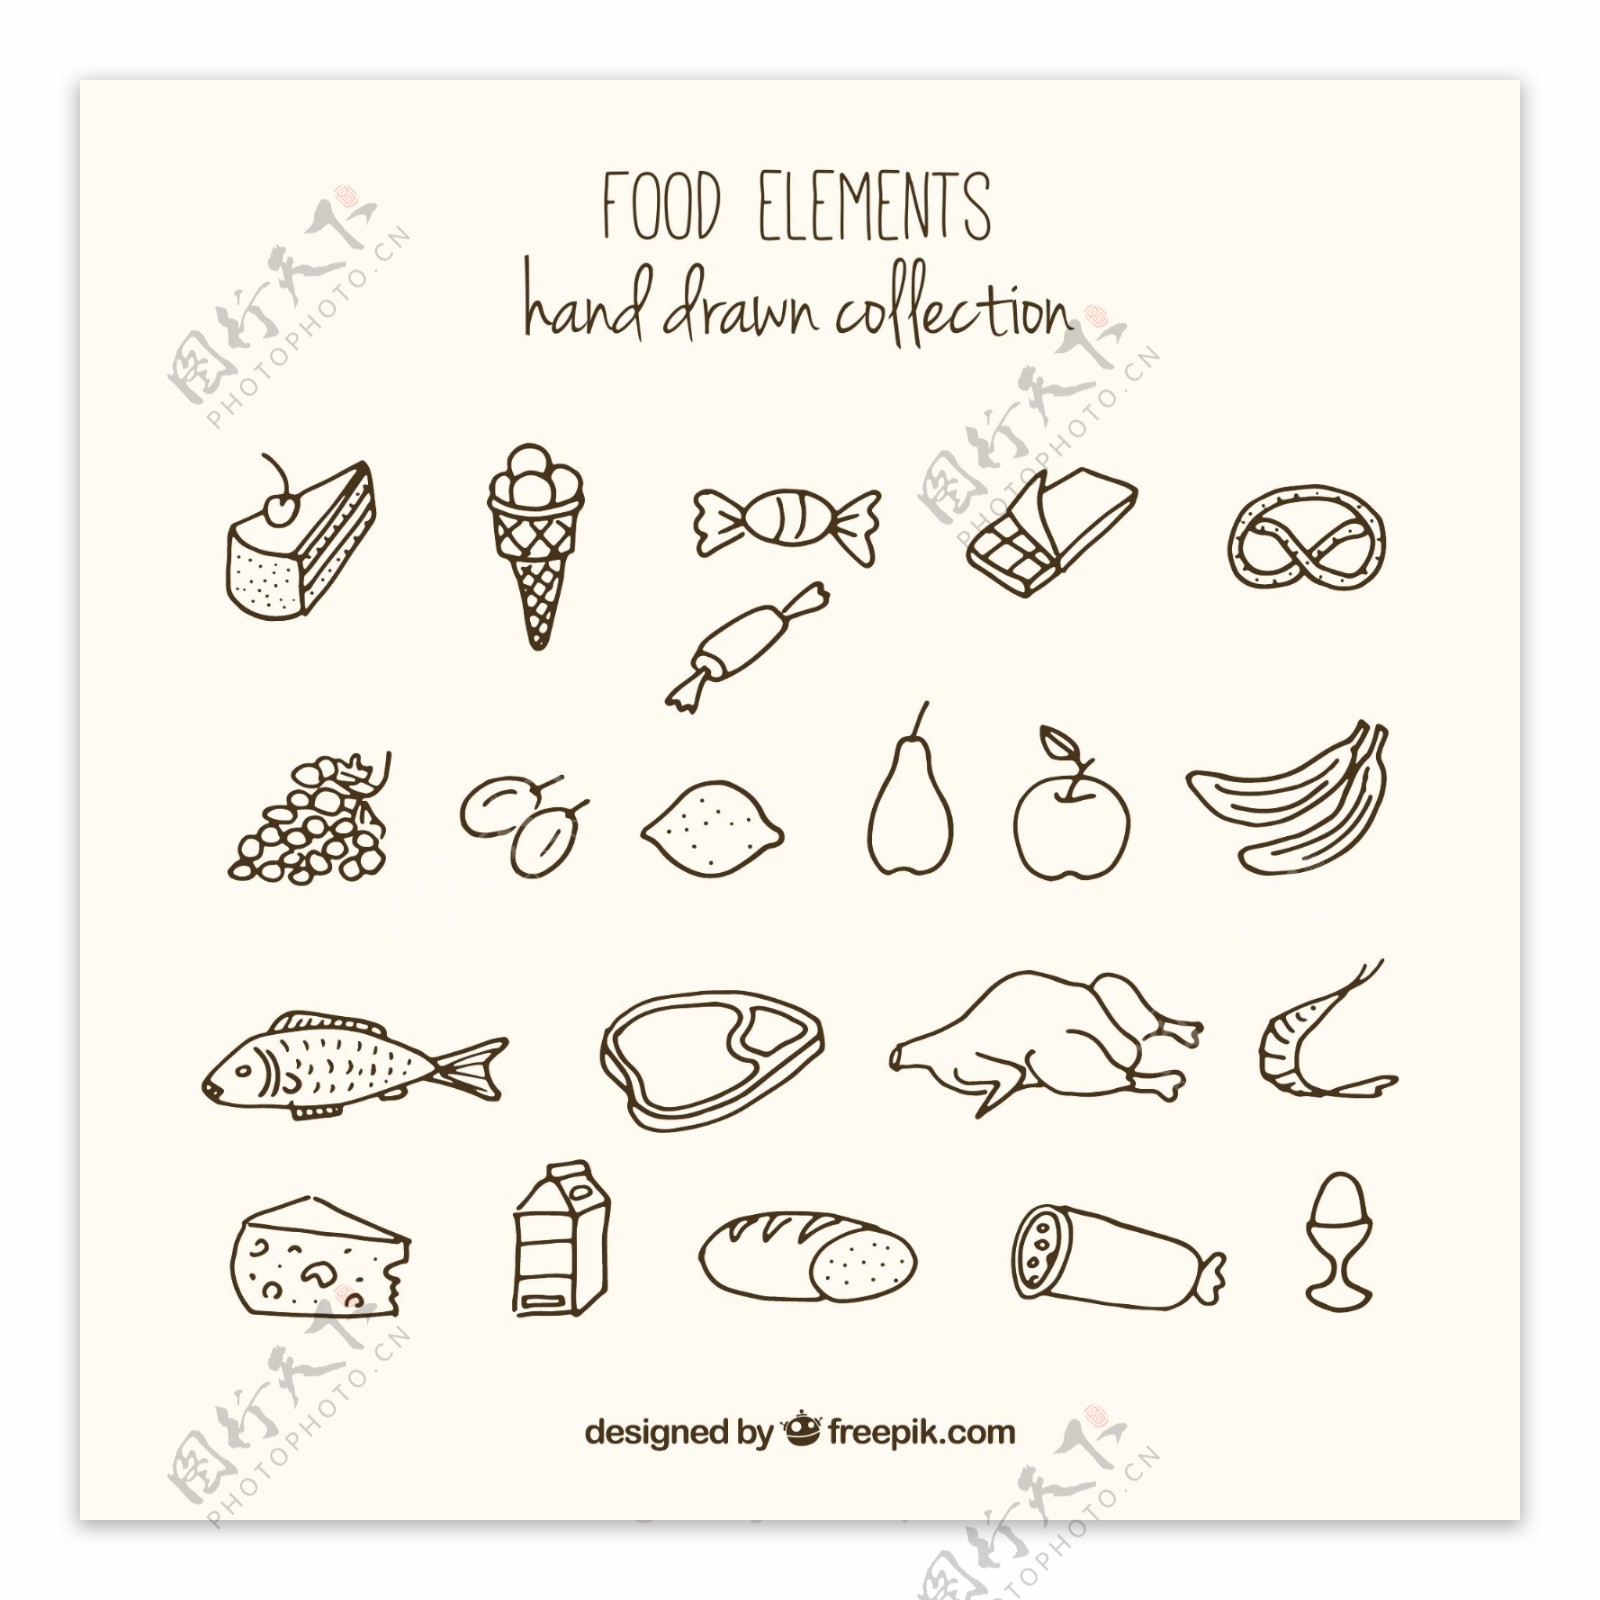 21款简洁手绘食物设计矢量素材